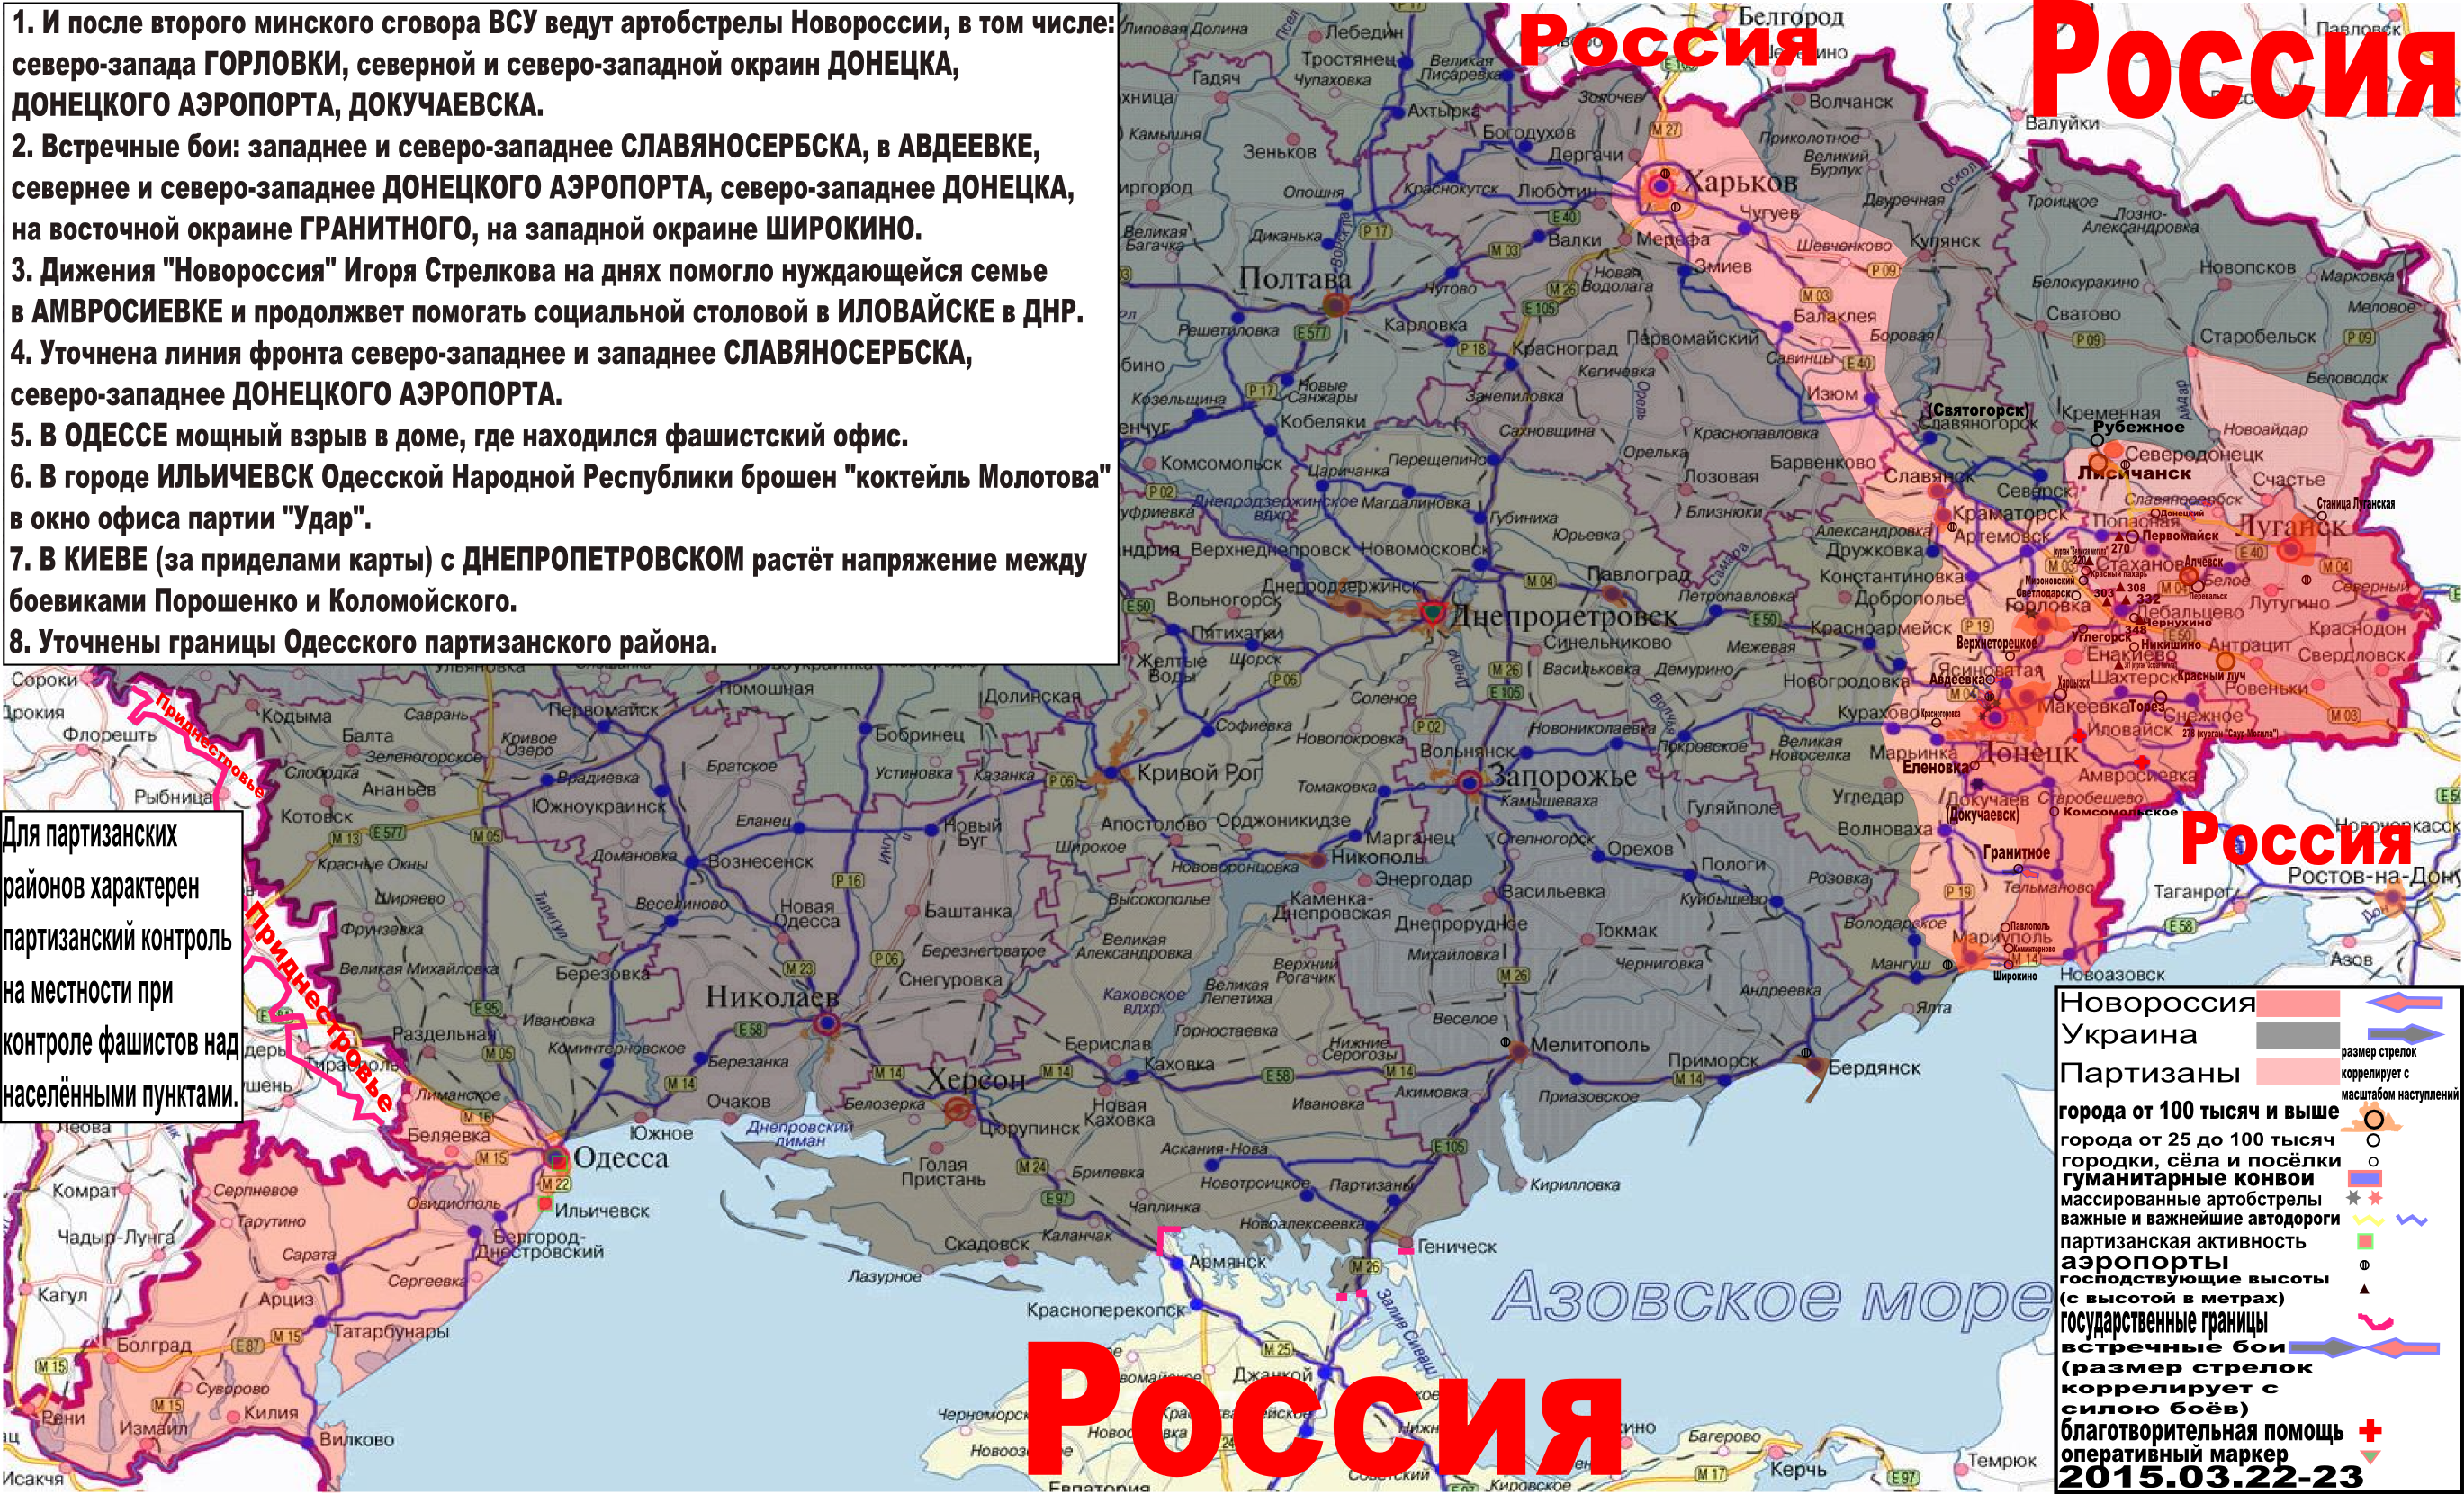 Карта боевых действий и гуманитарных вестей Новороссии с партизанскими районами за 22-23 марта 2015